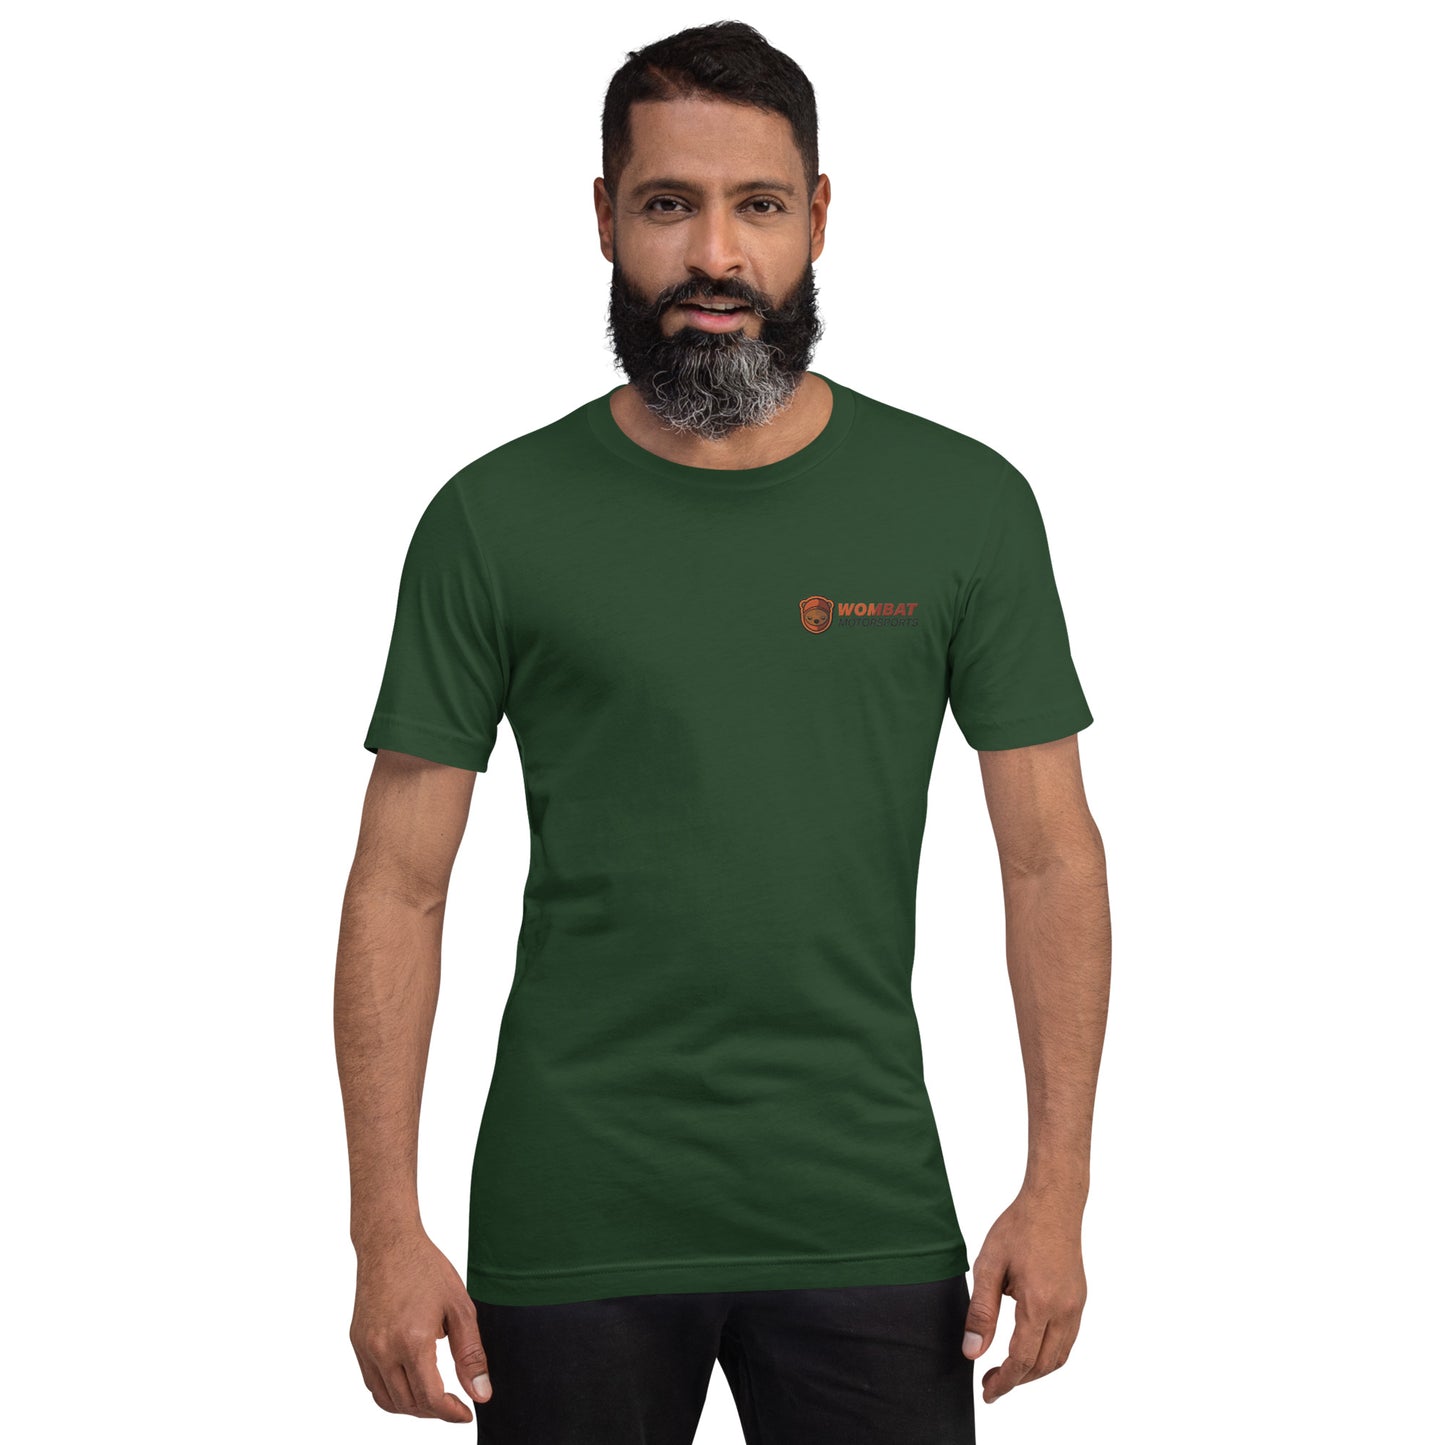 Wombat Motorsports t-shirt